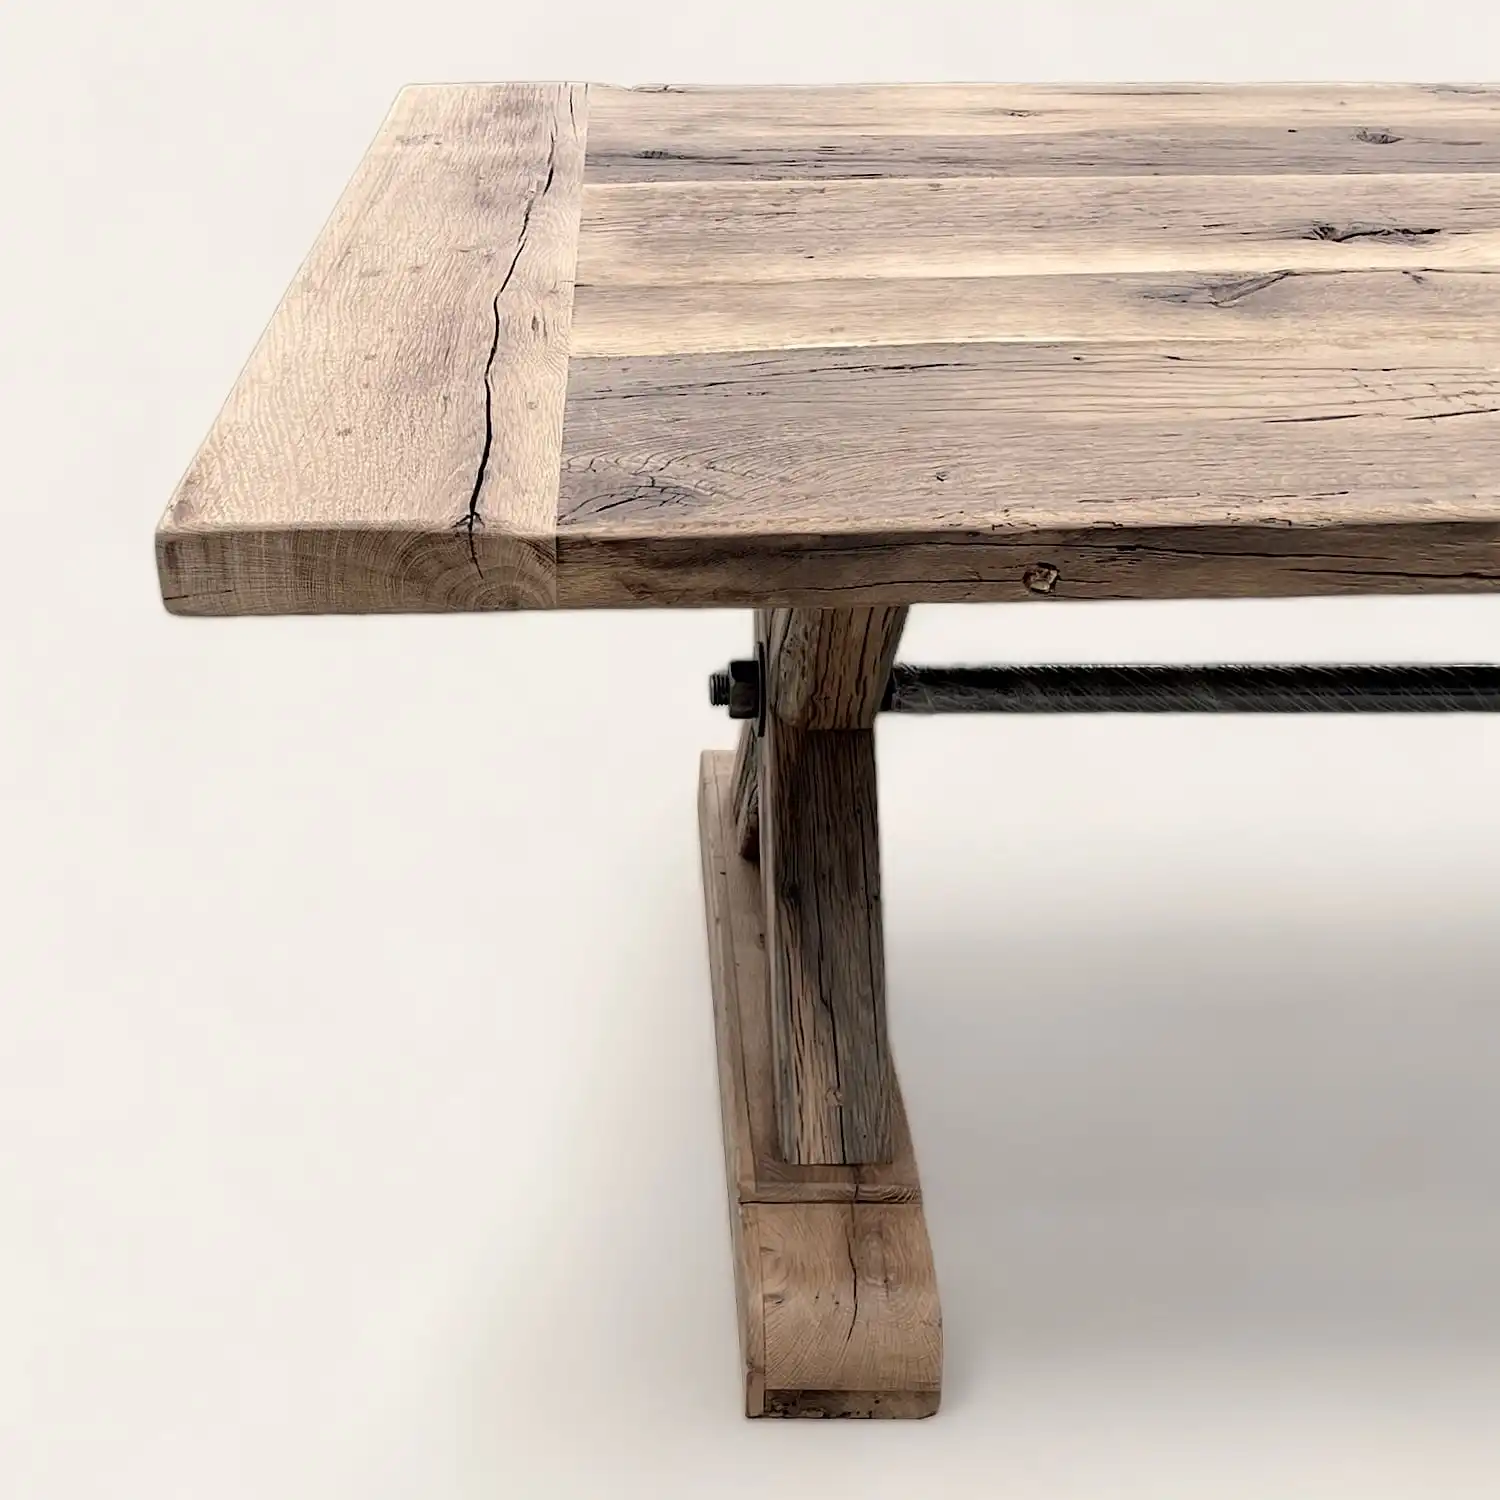  Une table à manger en bois ancien avec une base en métal. 